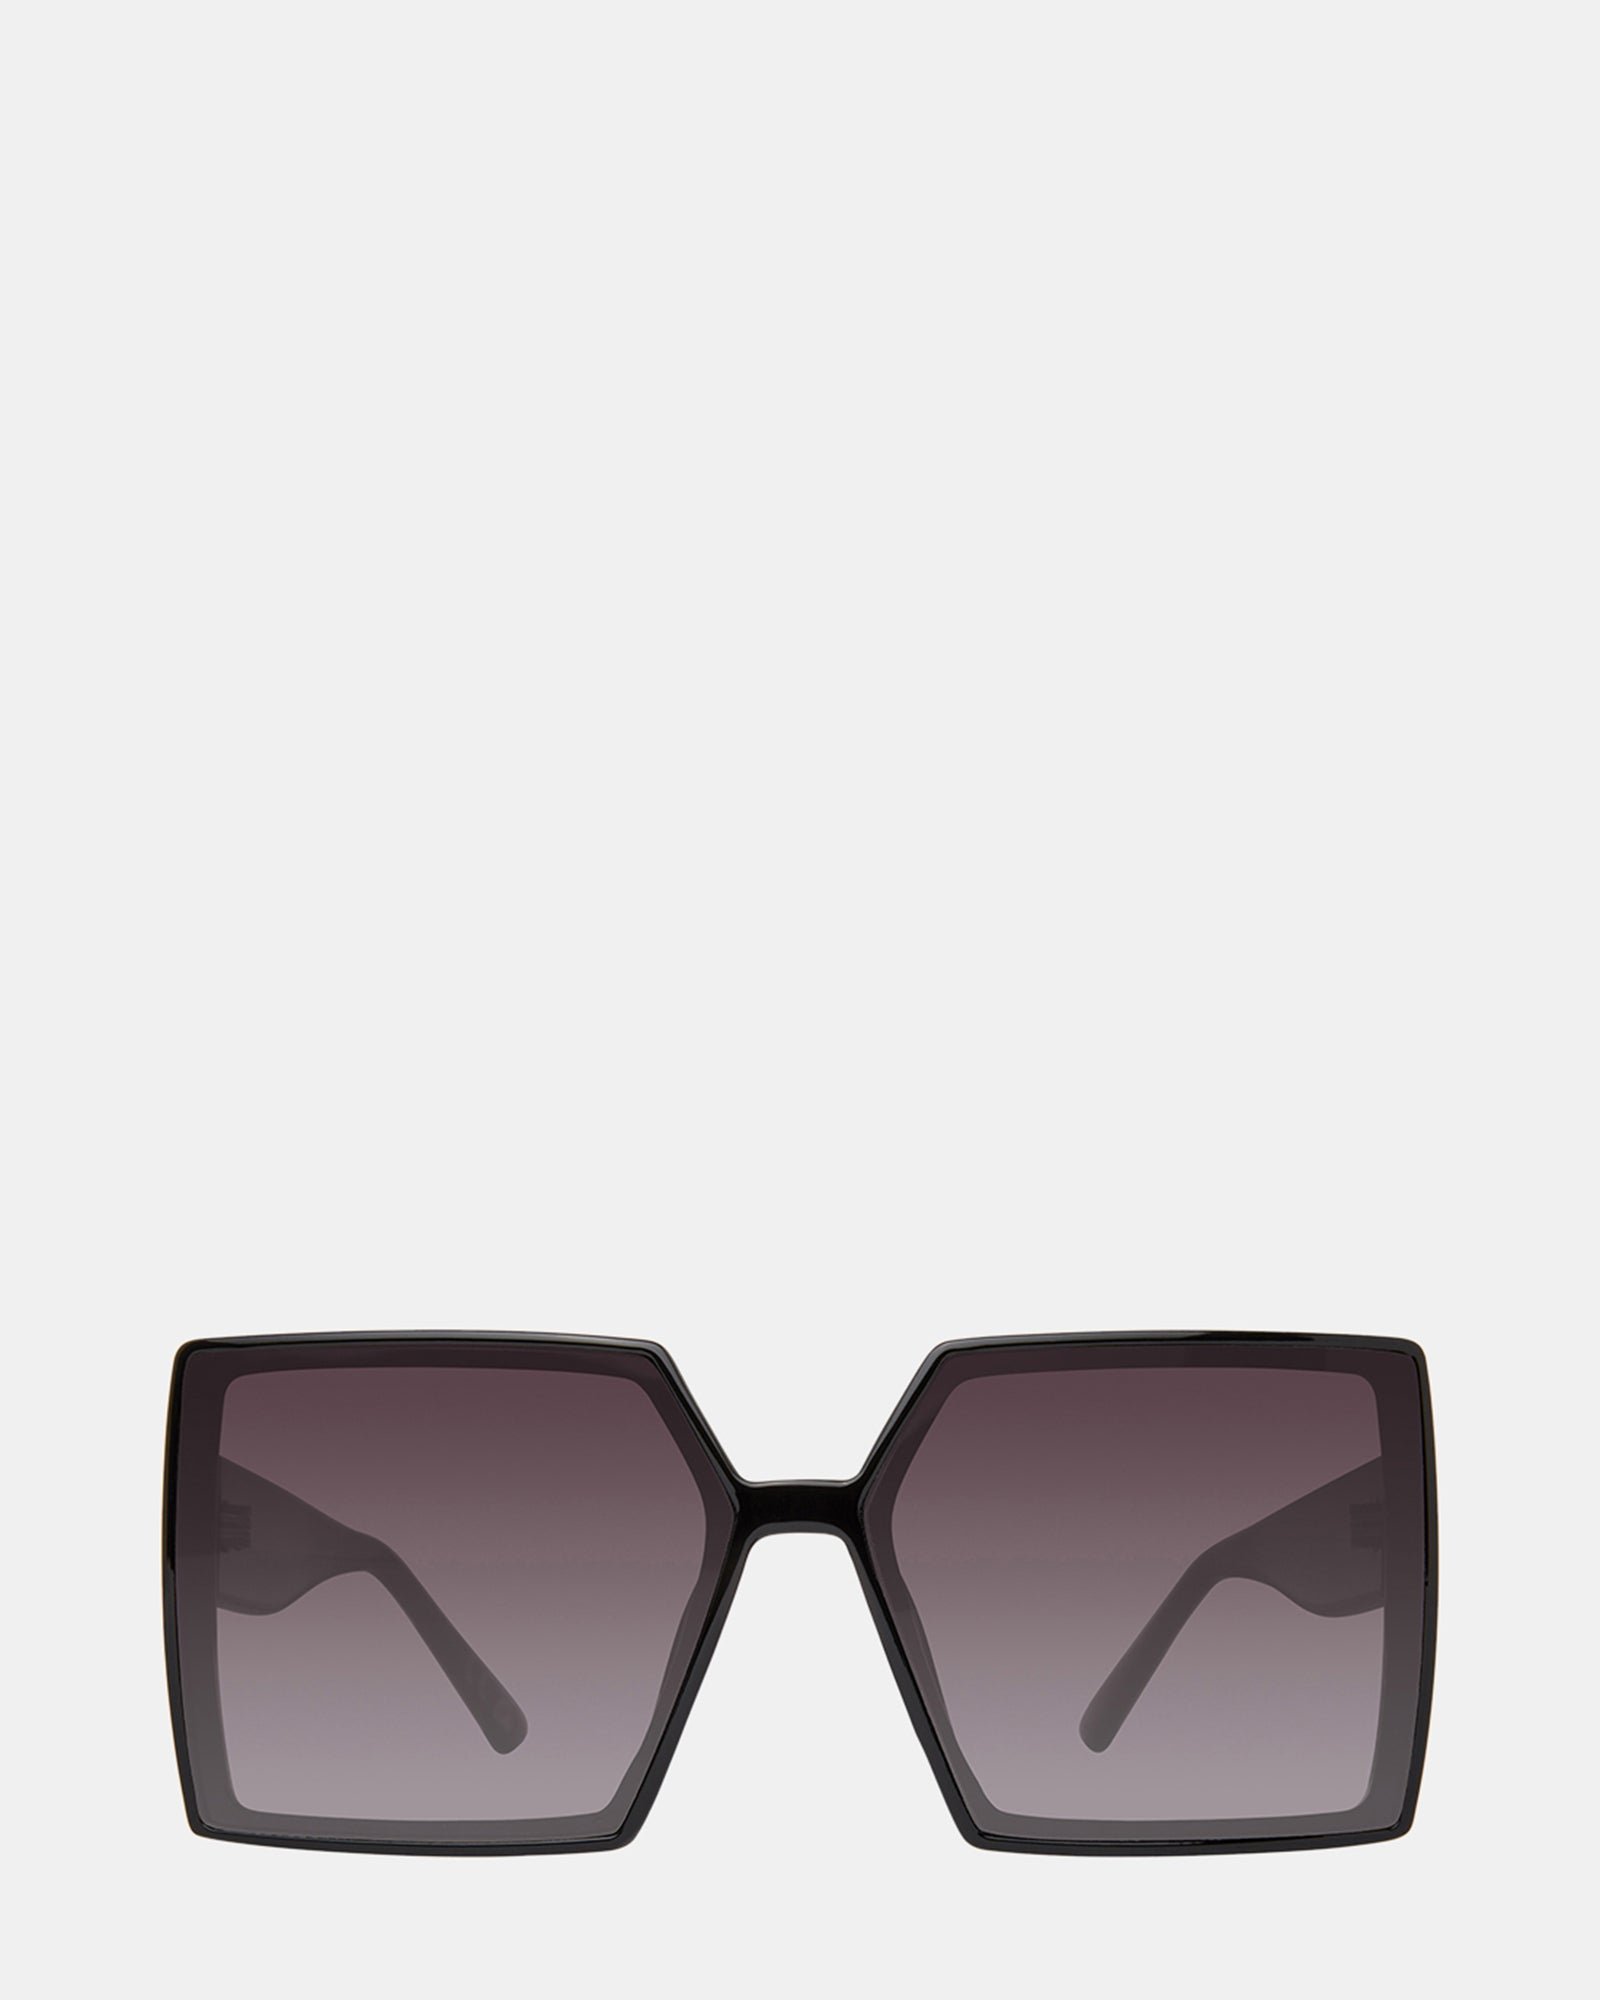 Women's Sunglasses from Steve Madden